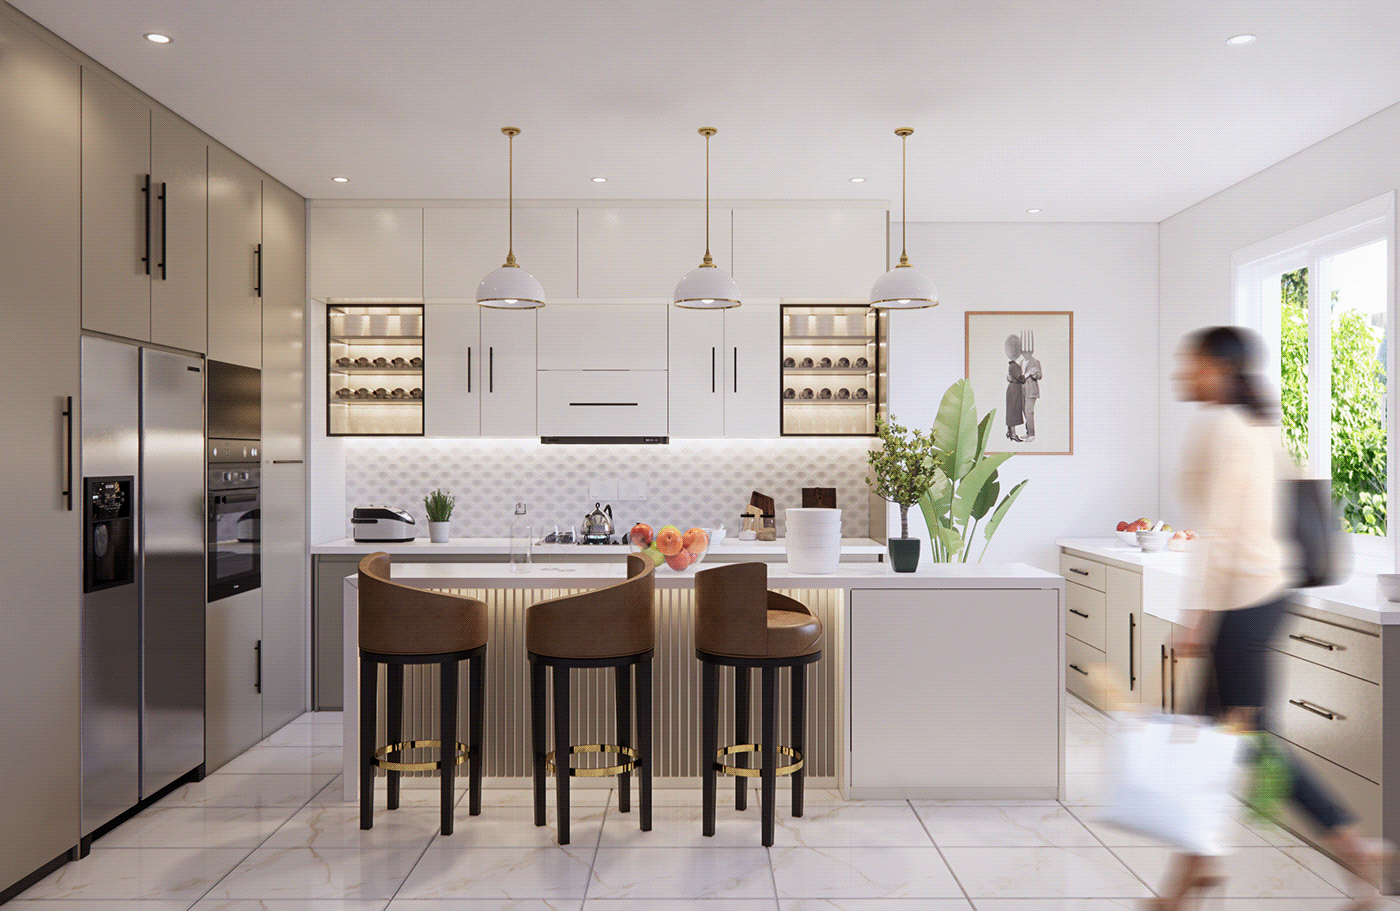 3D architecture enscape Interior interior design  kitchen kitchen design modern visualization